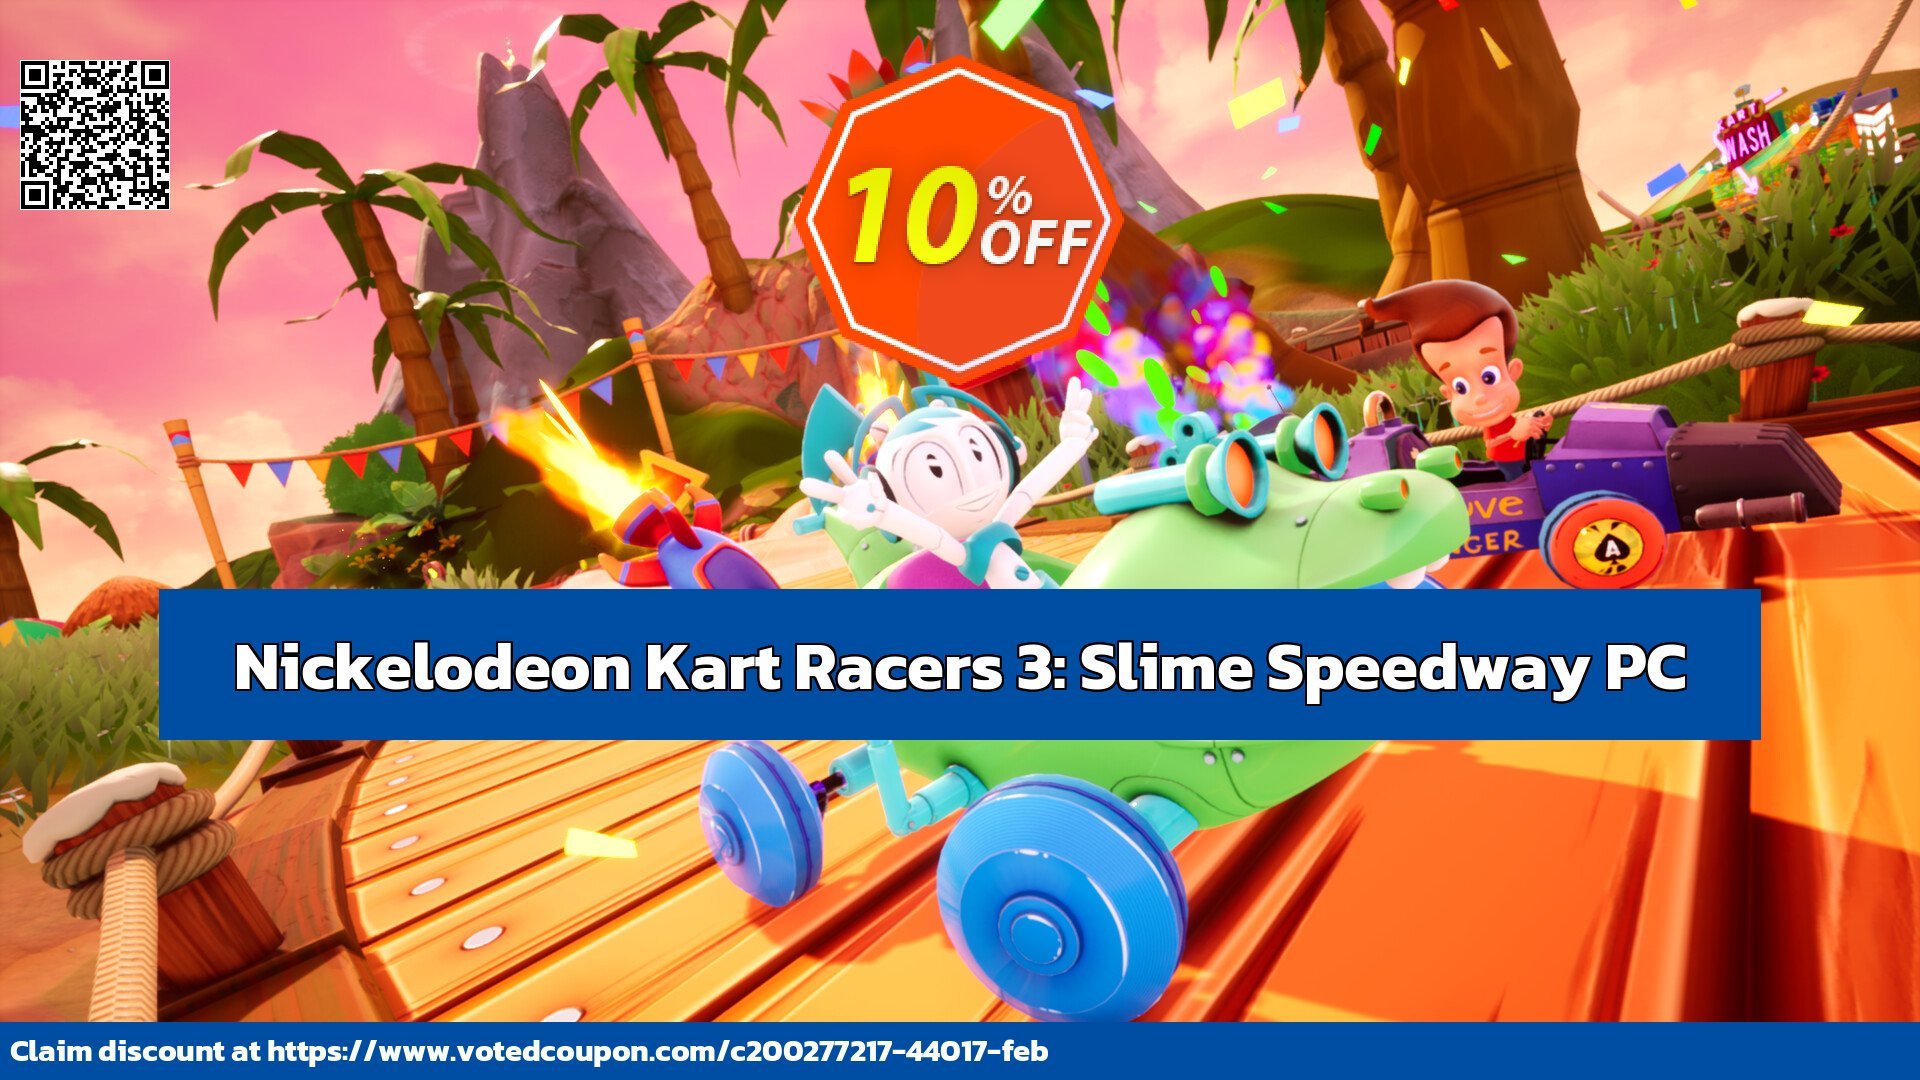 Nickelodeon Kart Racers 3: Slime Speedway PC Coupon, discount Nickelodeon Kart Racers 3: Slime Speedway PC Deal CDkeys. Promotion: Nickelodeon Kart Racers 3: Slime Speedway PC Exclusive Sale offer